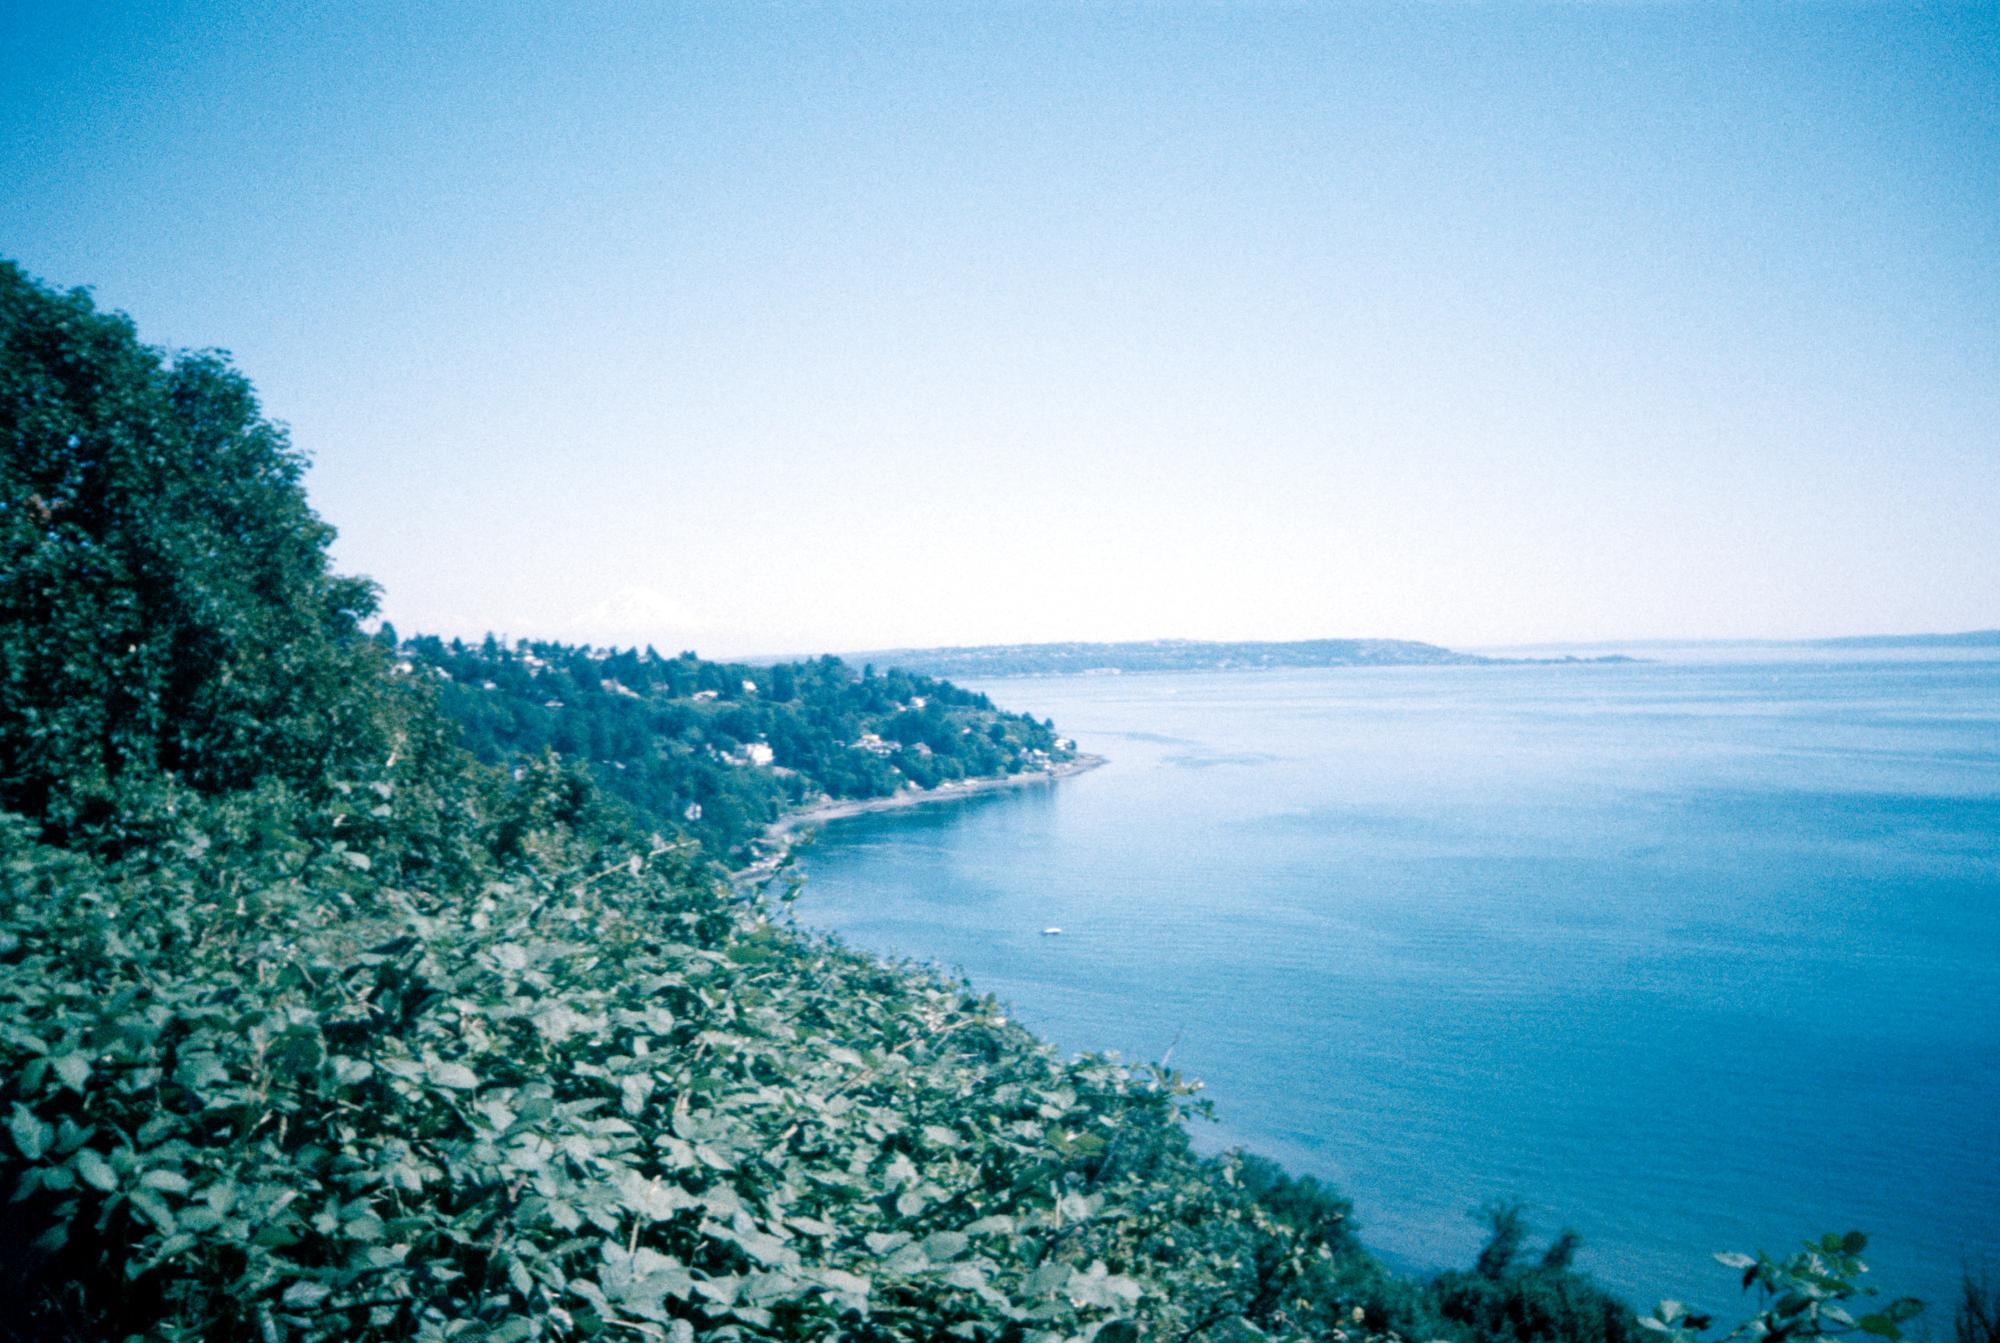 Seattle (1994) - Puget Sound